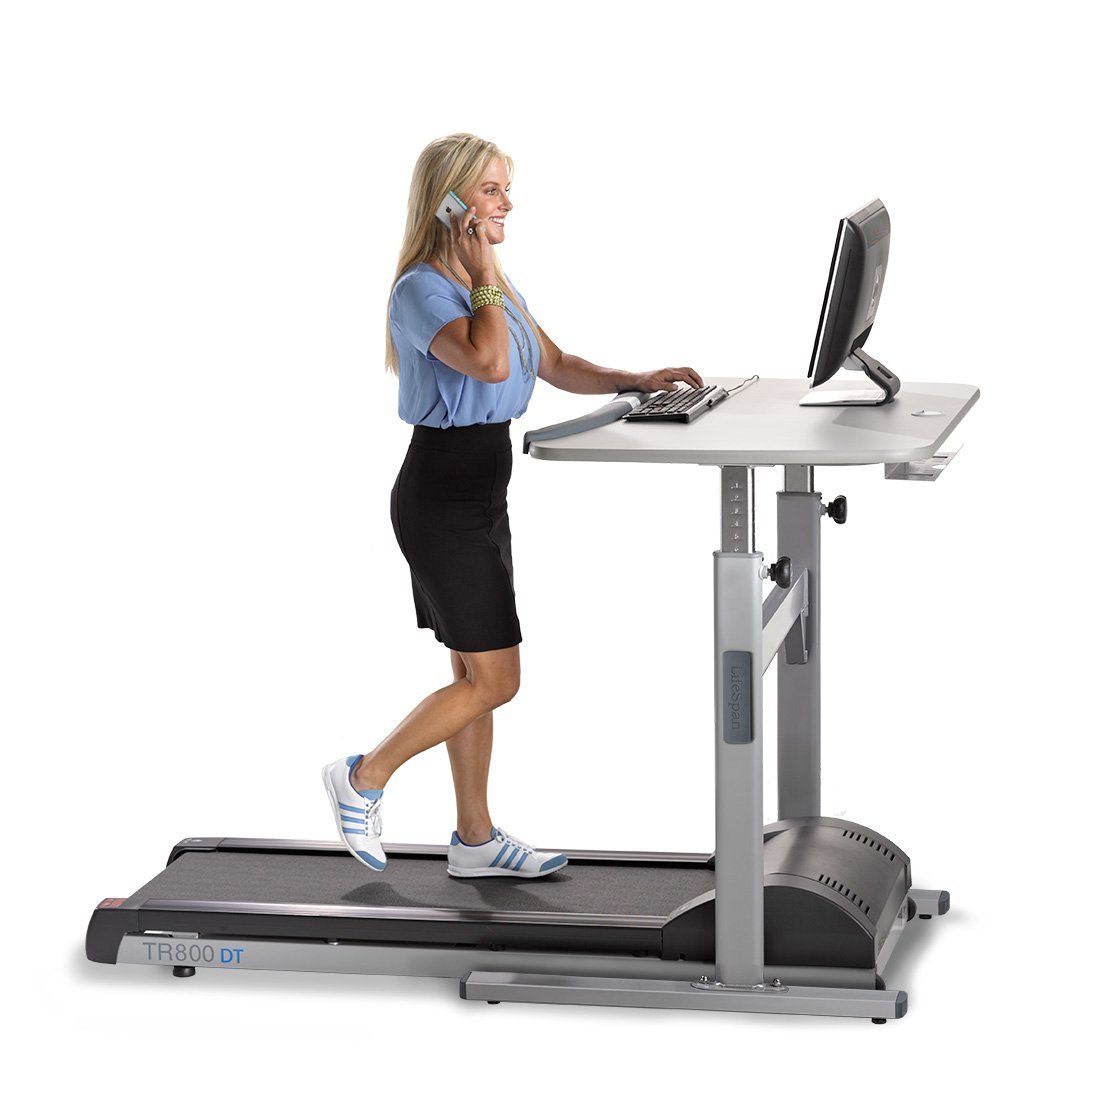 Top 10 Benefits of a Treadmill Desk